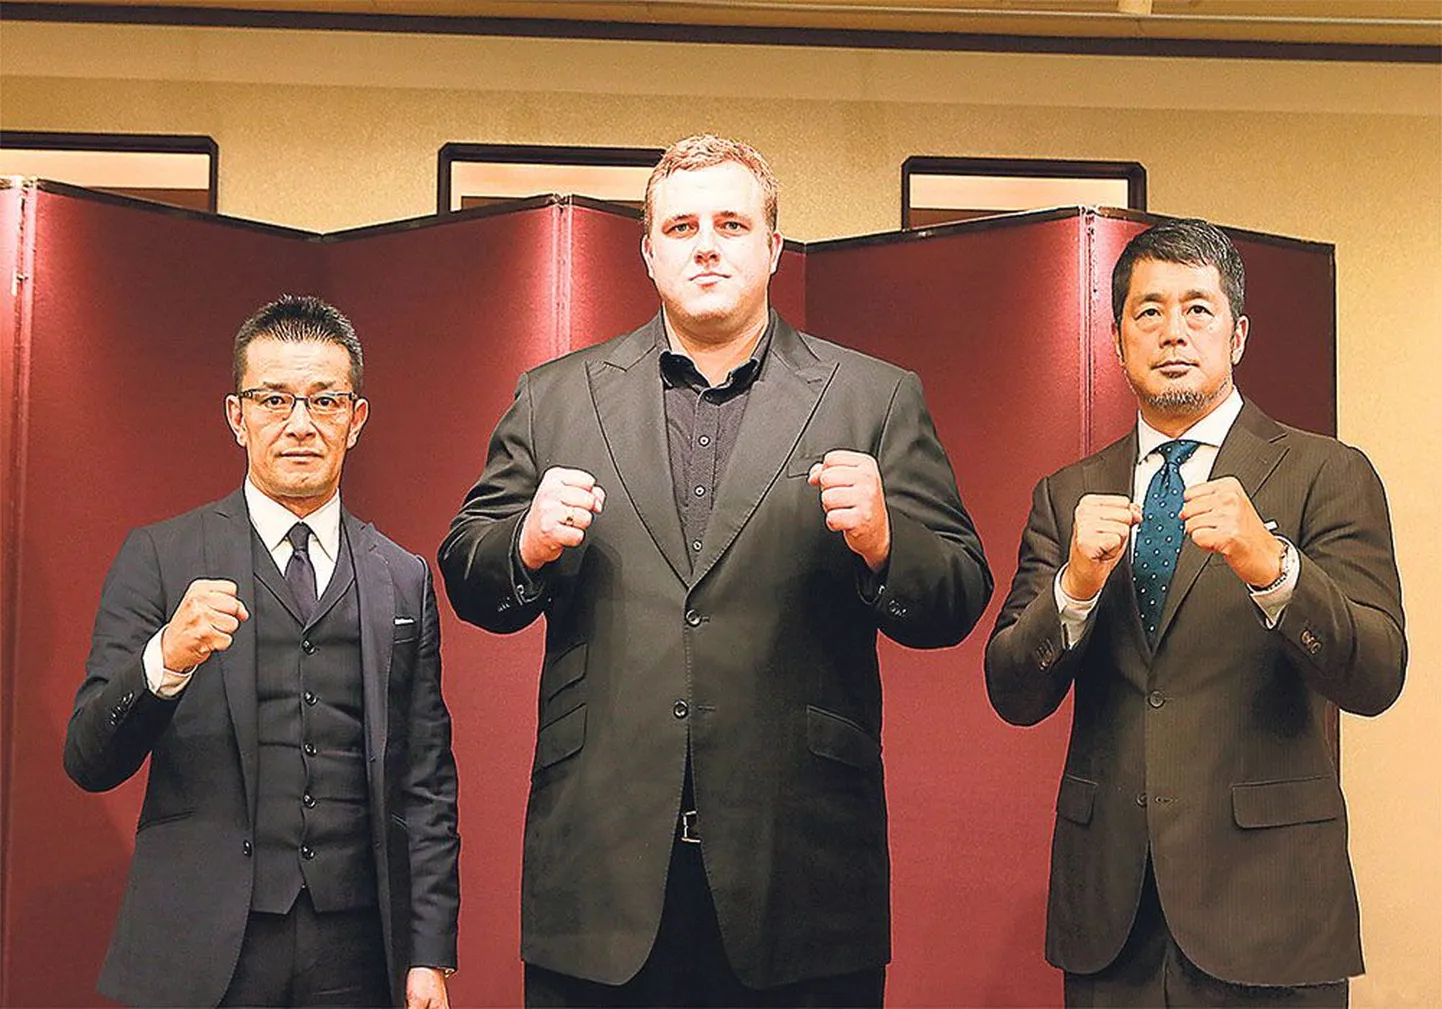 Кайдо Хёэвельсон готов к новому испытанию. Его охраняют руководители спортивной федерации Rizin Fighting Federation Нобуяки 
Сакакибара (слева) и Нобухико Такада (справа).